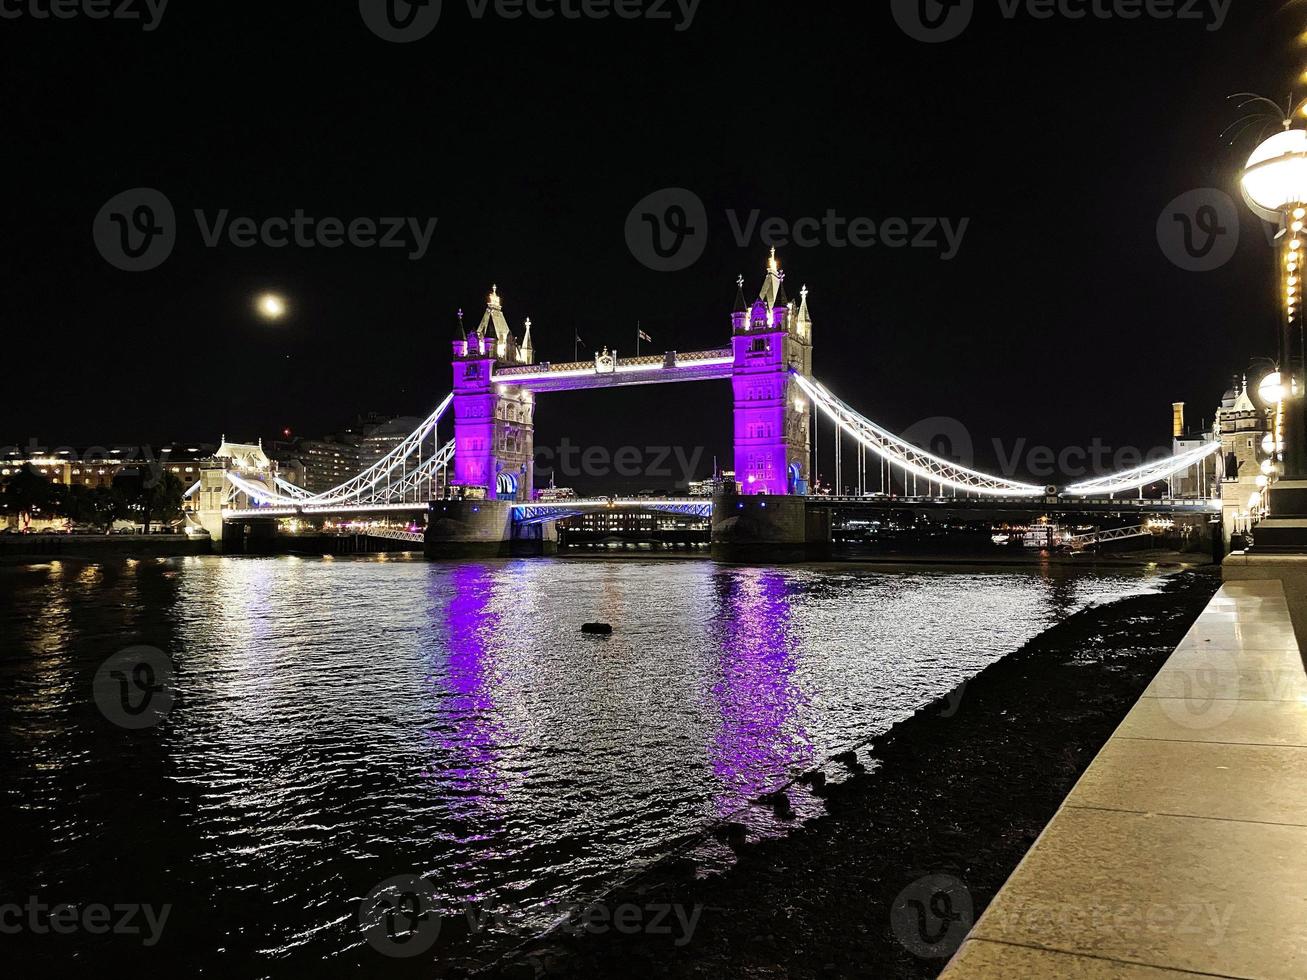 Une vue sur Tower Bridge à Londres la nuit éclairée en violet photo